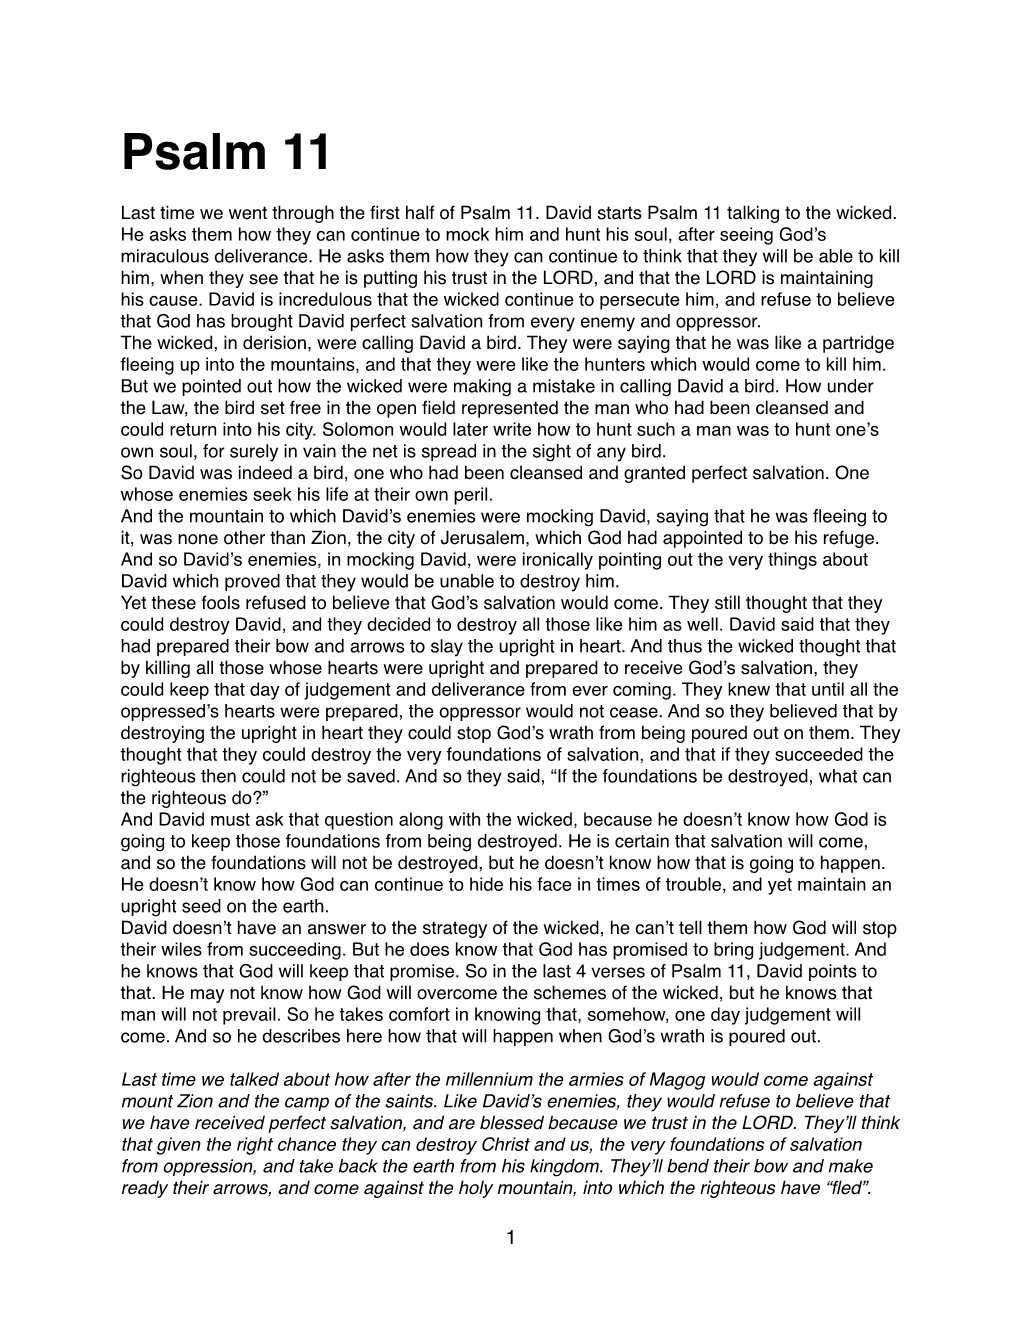 Psalm 11 Part 2